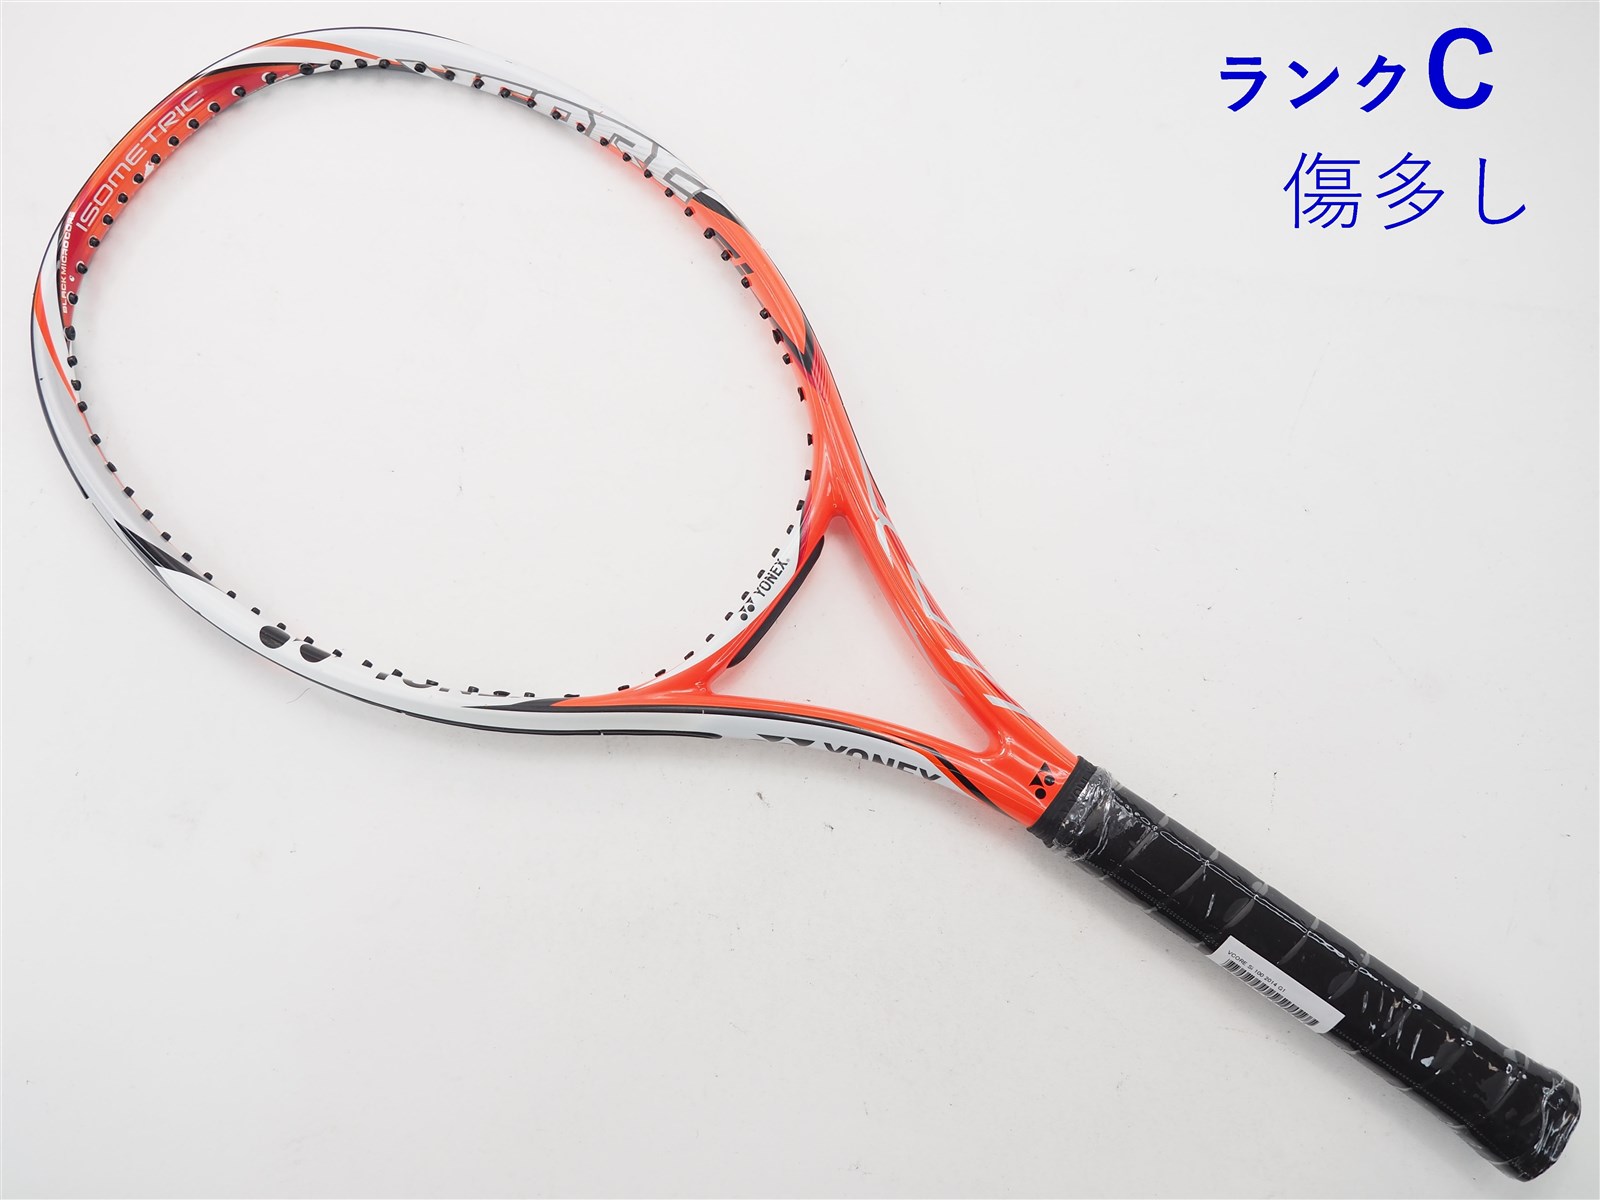 ヨネックス ブイコア 95 2018年モデル(G3)/YONEX VCORE 95 2018 テニス 